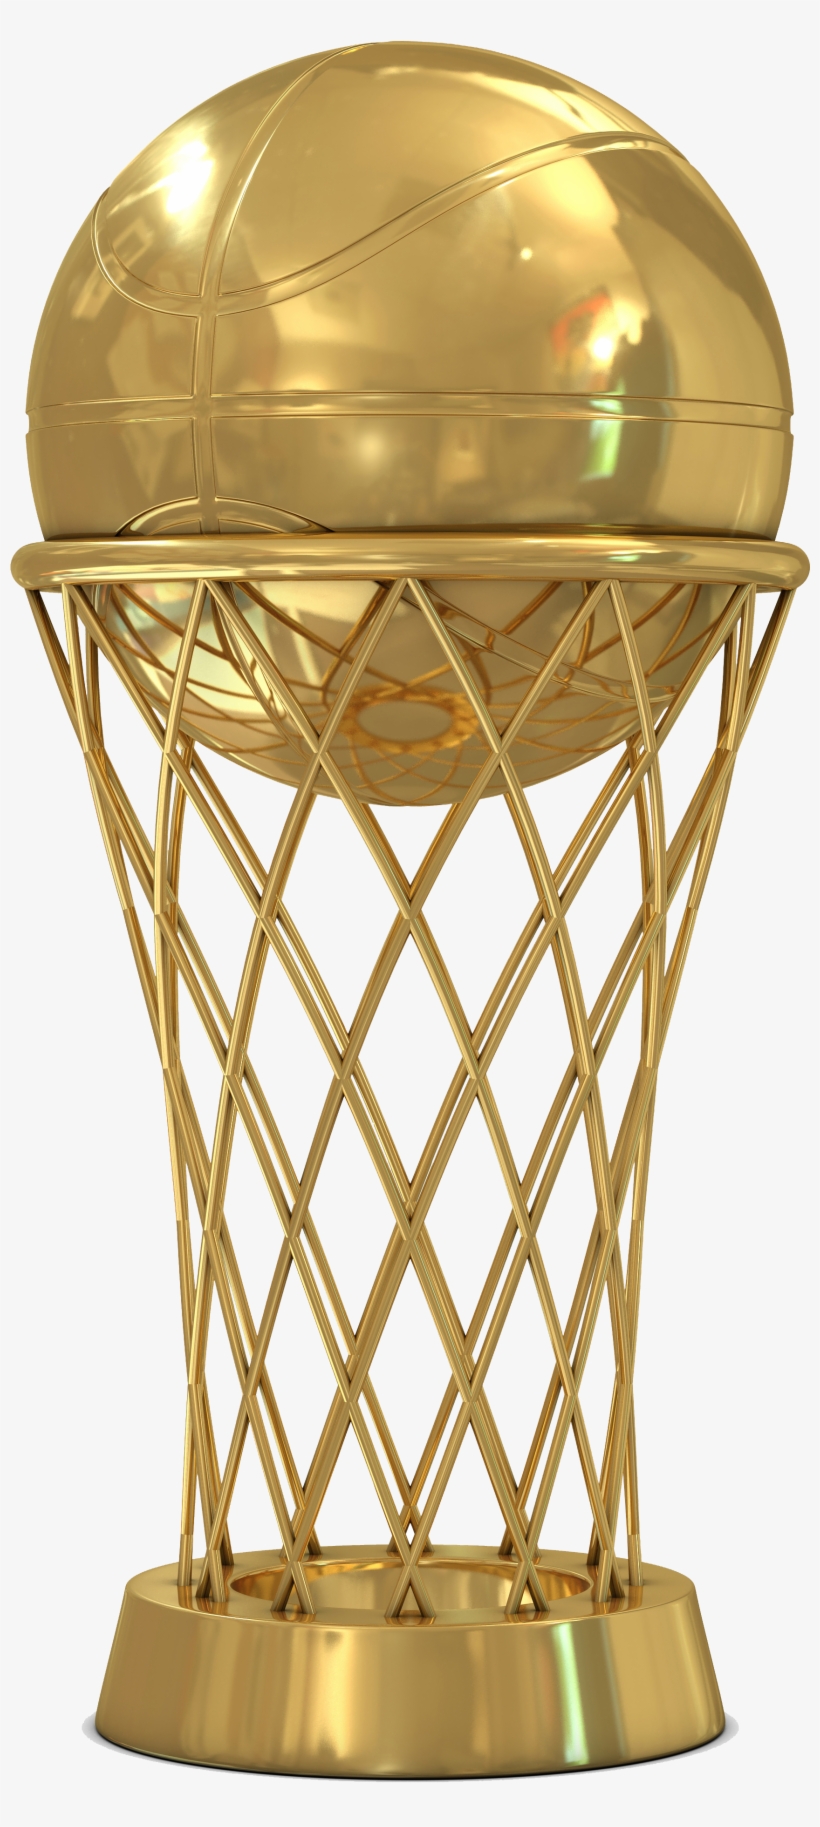 Summer - Basketball Championship Trophy, transparent png #2877008